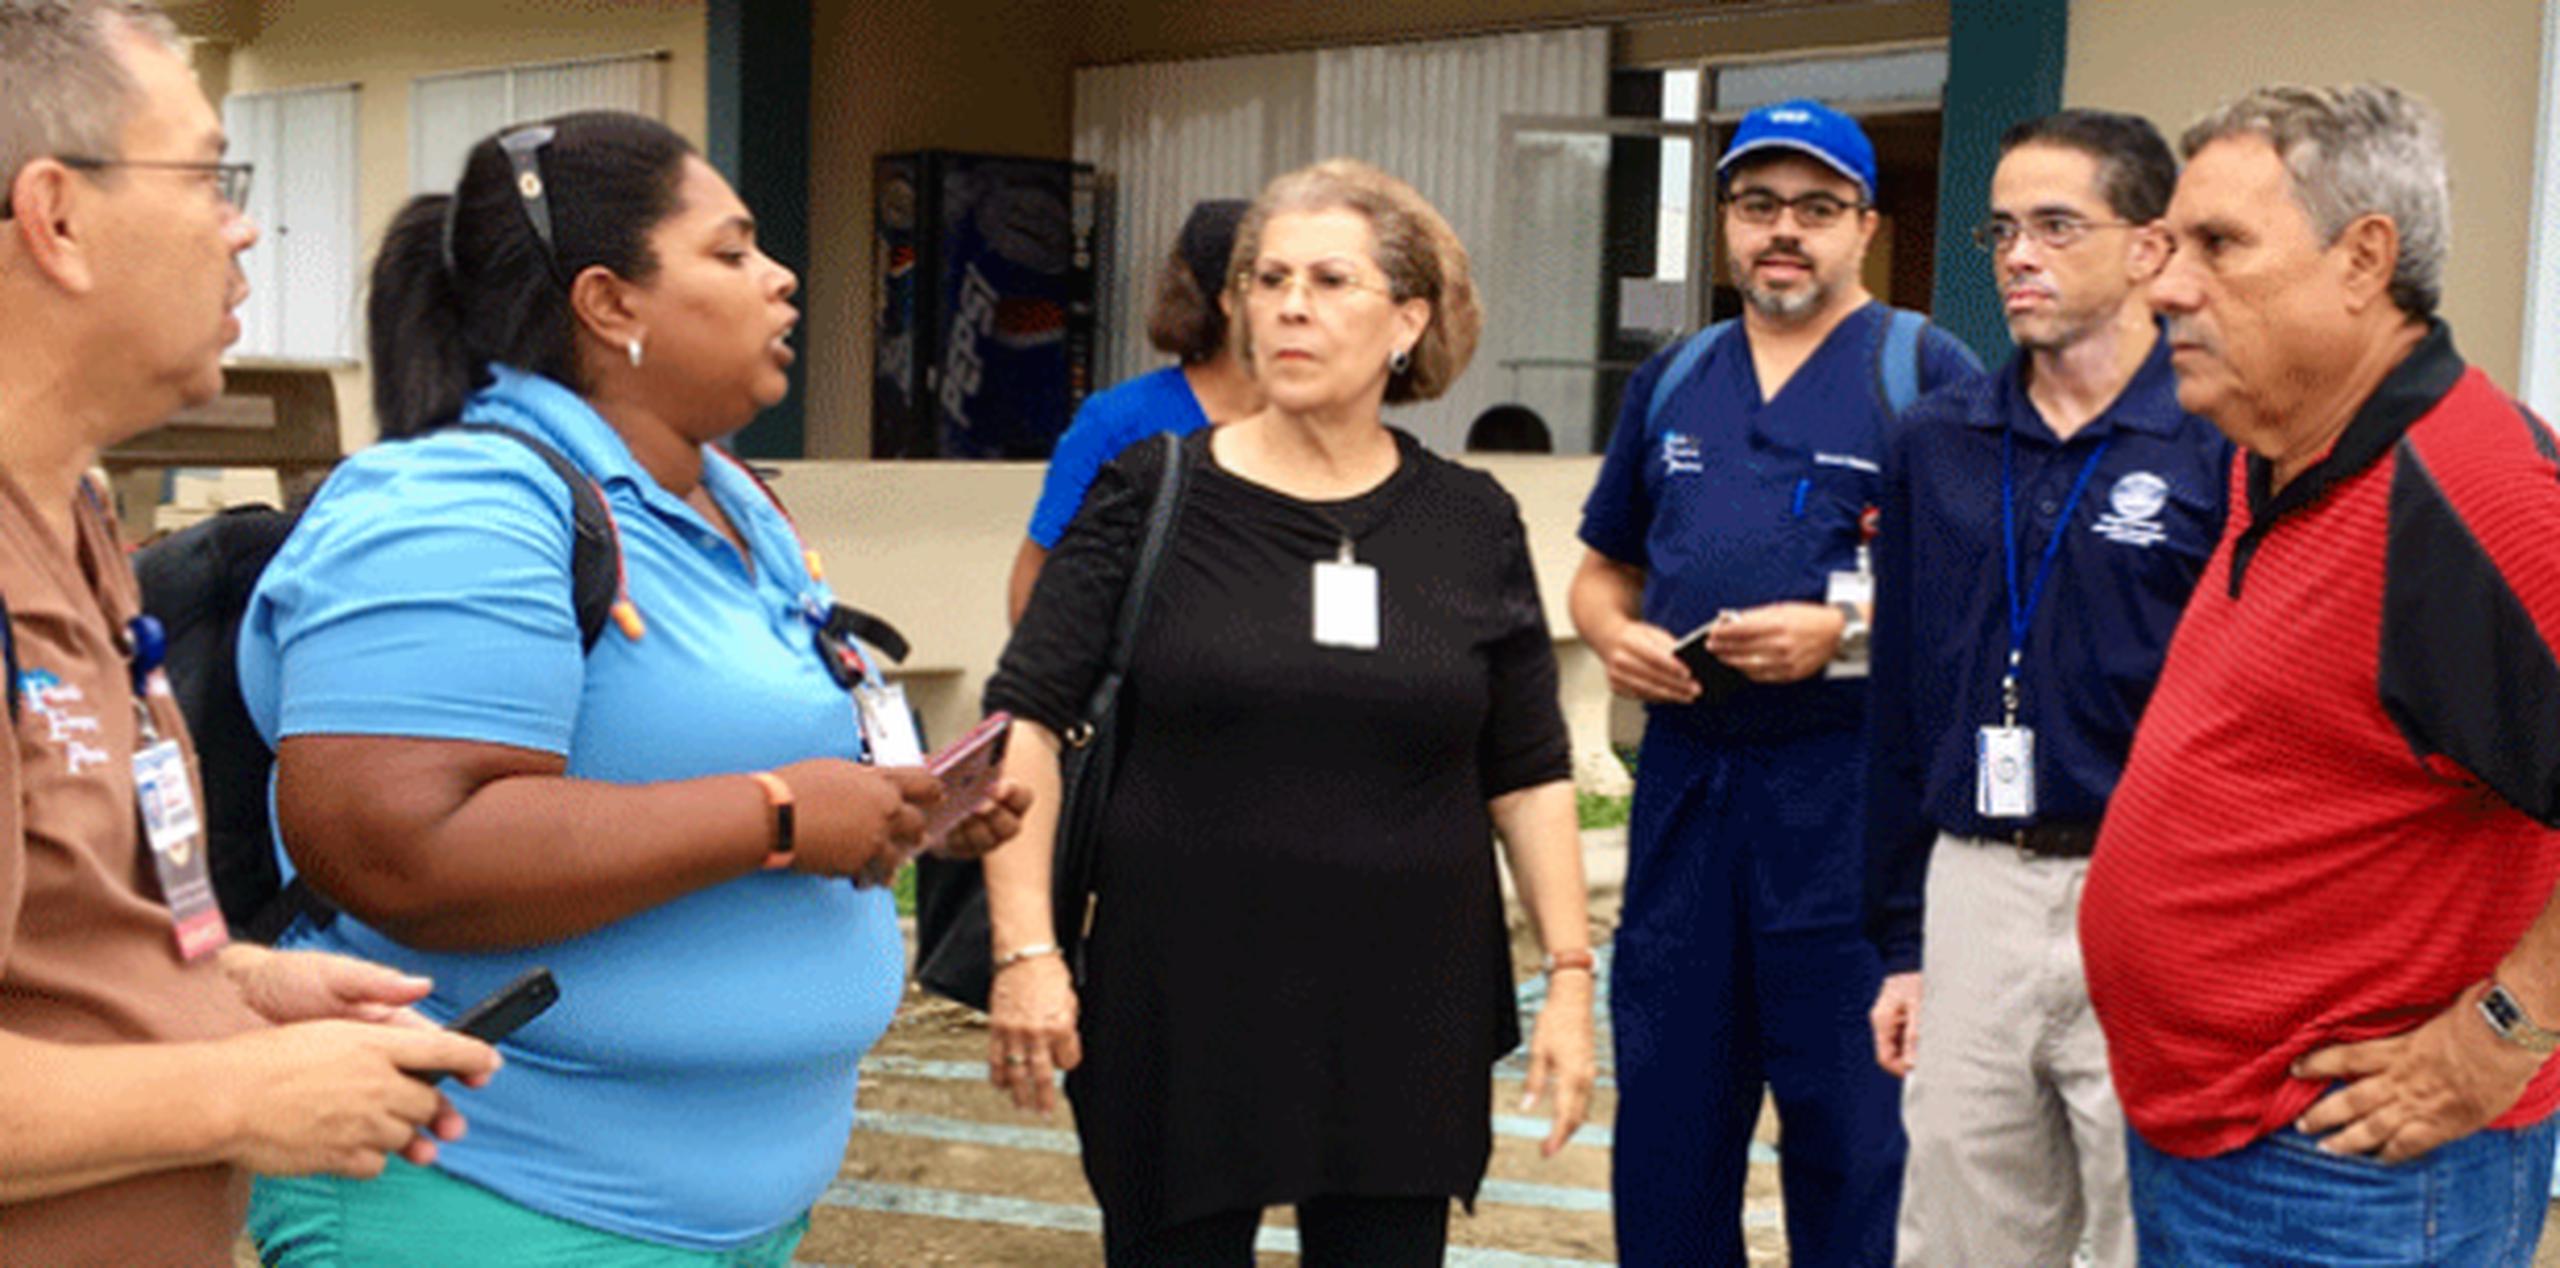 La doctora (al centro) expuso sus preocupaciones en el plano de salud tras visitar la Isla luego del paso del huracán María. (Suministrada)